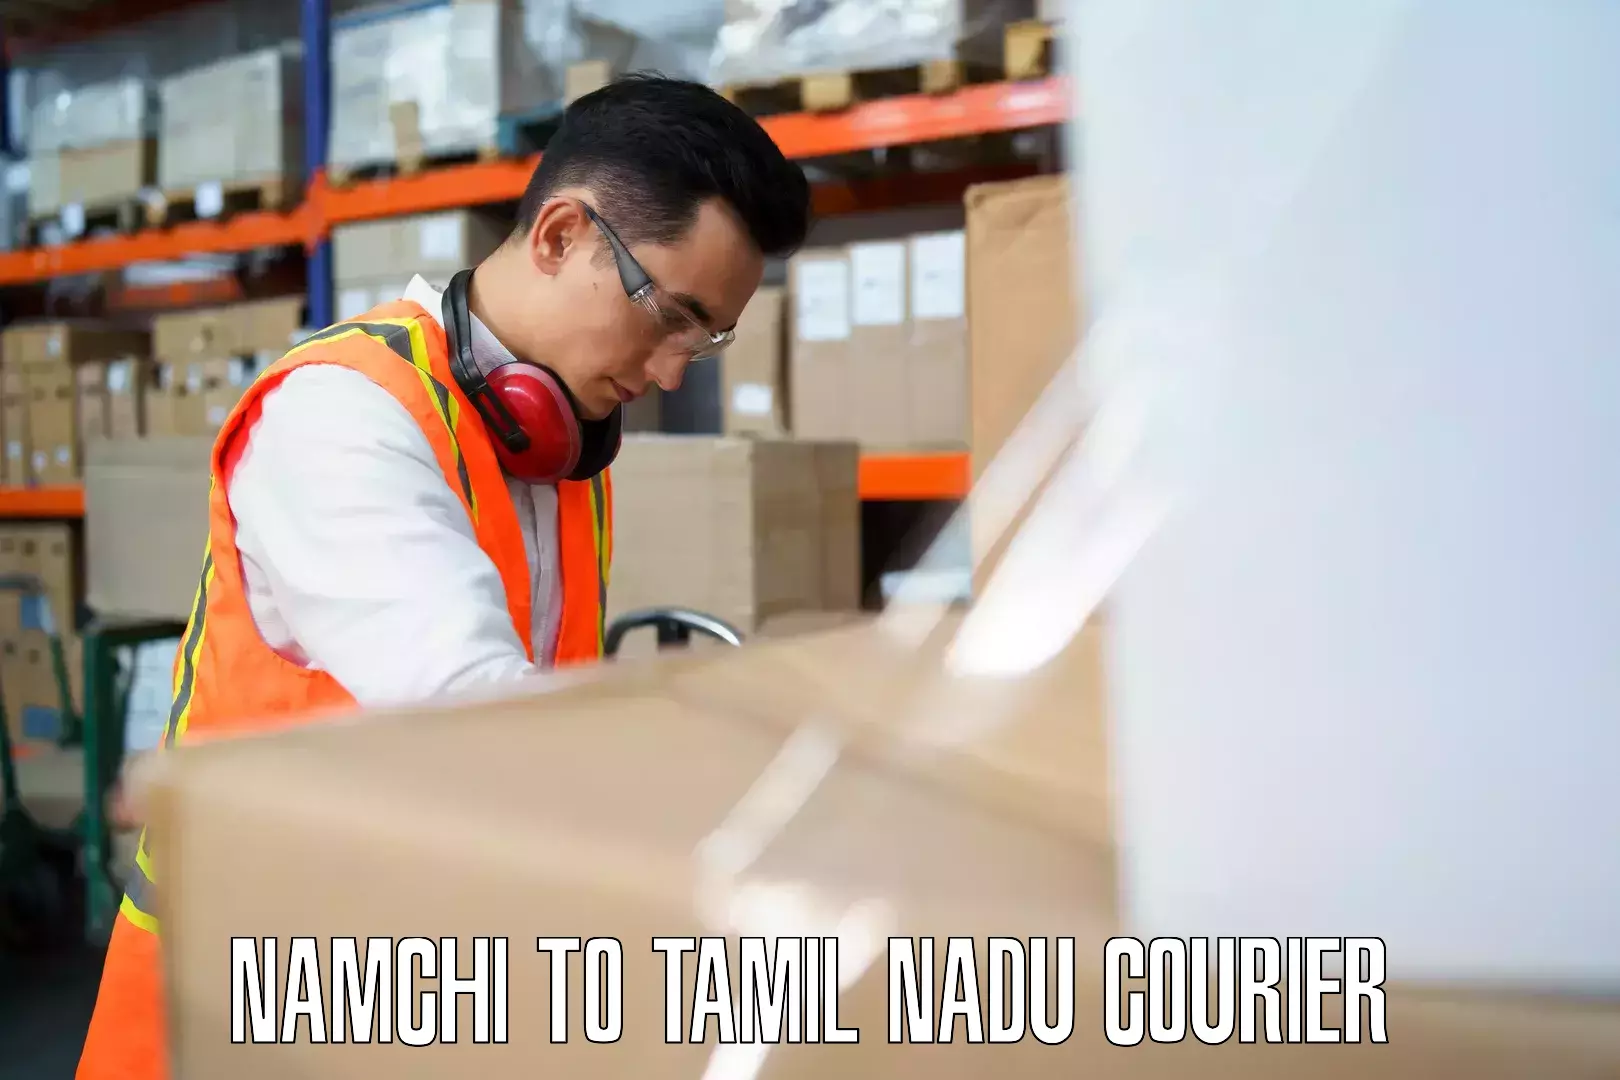 Baggage transport scheduler Namchi to Tamil Nadu